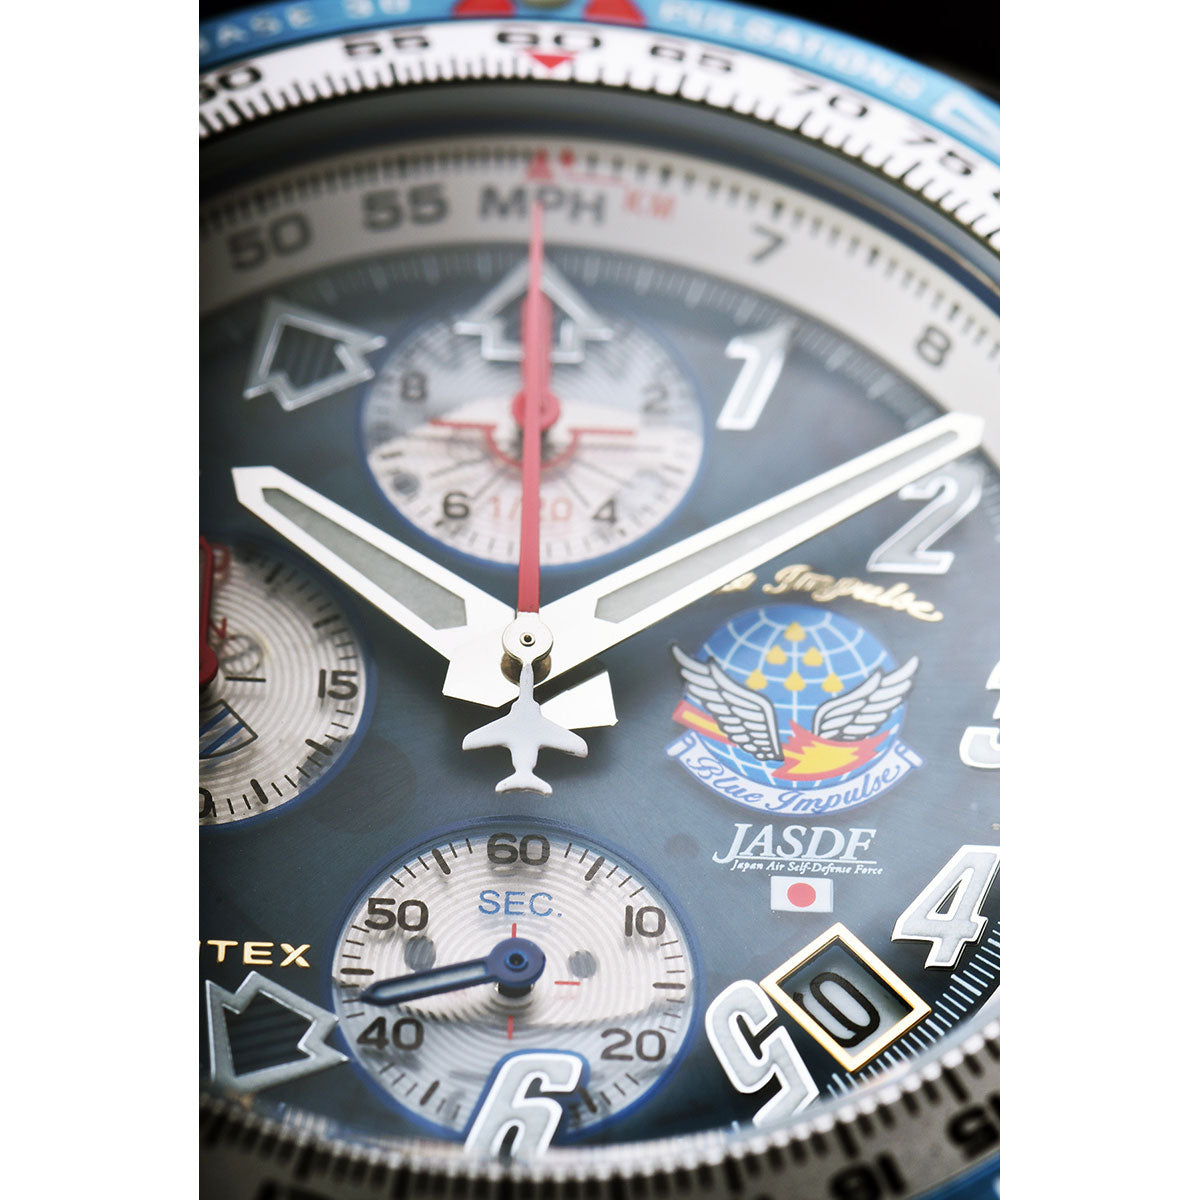 ケンテックス 腕時計 時計 KENTEX ブルーインパルス 日本製 S793M-1 Blue Impulse 60周年 2020個 限定モデル メンズ クロノグラフ 航空自衛隊 回転計算尺 10気圧防水 ネイビー シルバー JSDF チタン